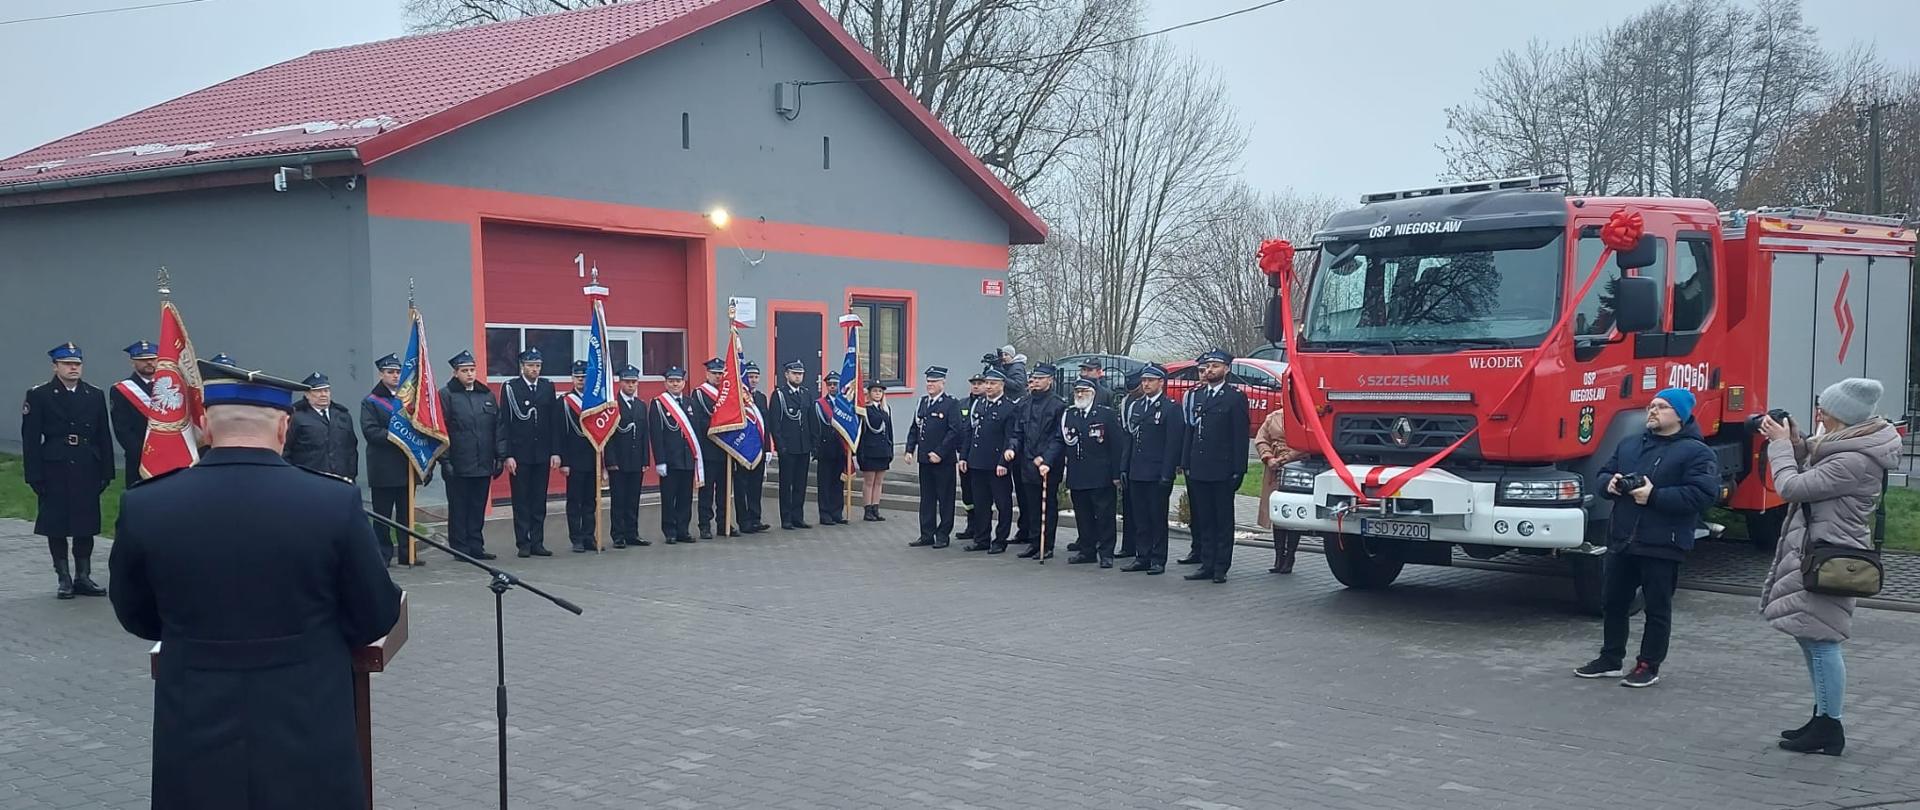 Fotografia przedstawia ujęcie placu apelowego z ustawionymi pocztami sztandarowymi oraz pododdziałem strażaków ochotników obok nowego samochodu gaśniczego.